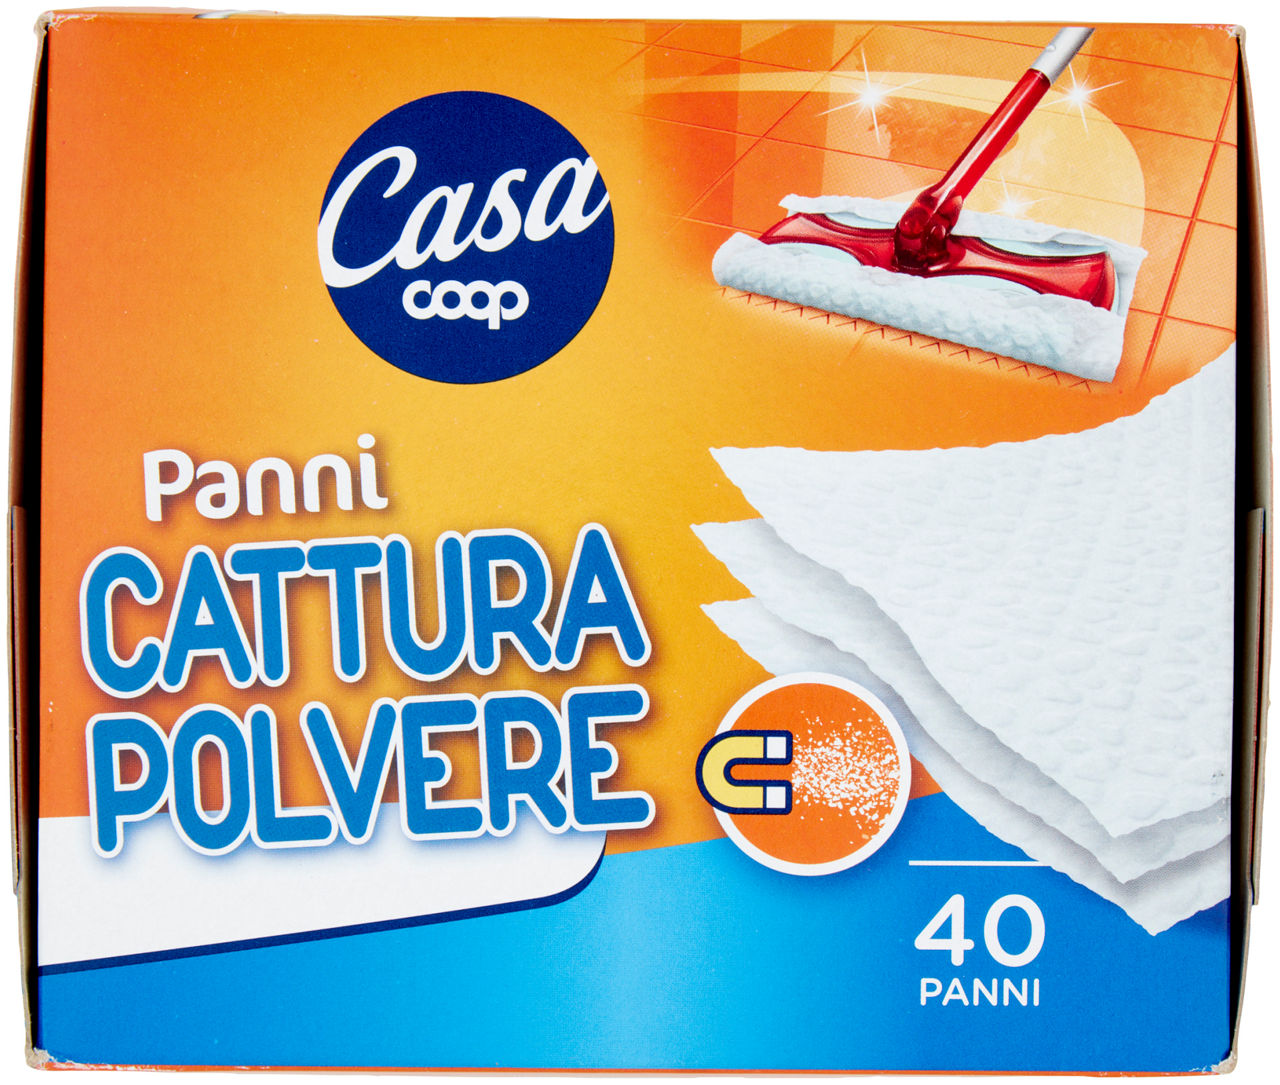 PANNI CATTURA POLVERE COOP CASA PZ.40 - 2